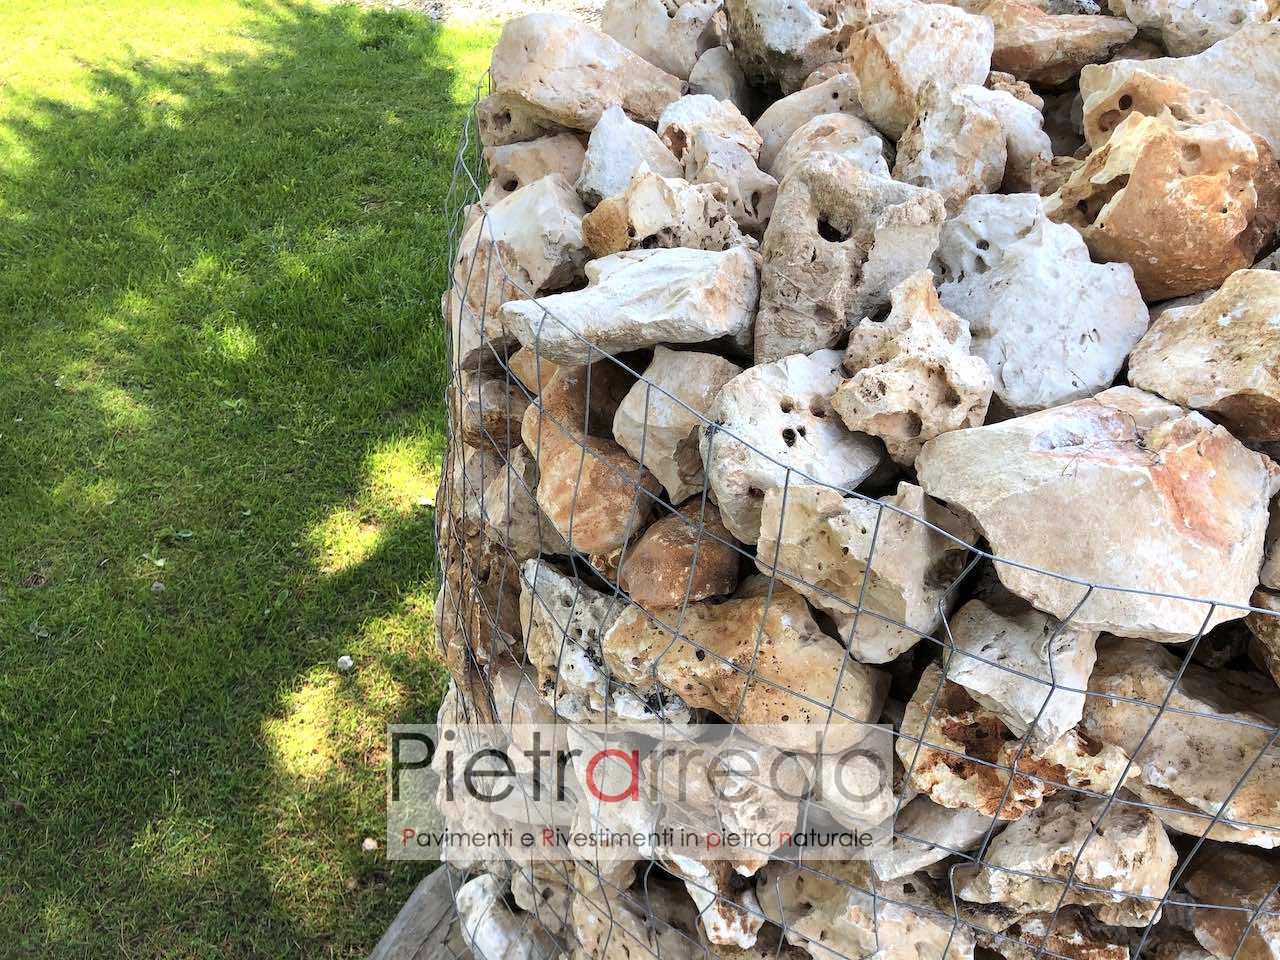 pietra ornamentale da giardino media 20 cm beige contenimento bordure aiuole sasso grezzo roccia pietrarredo prezzo